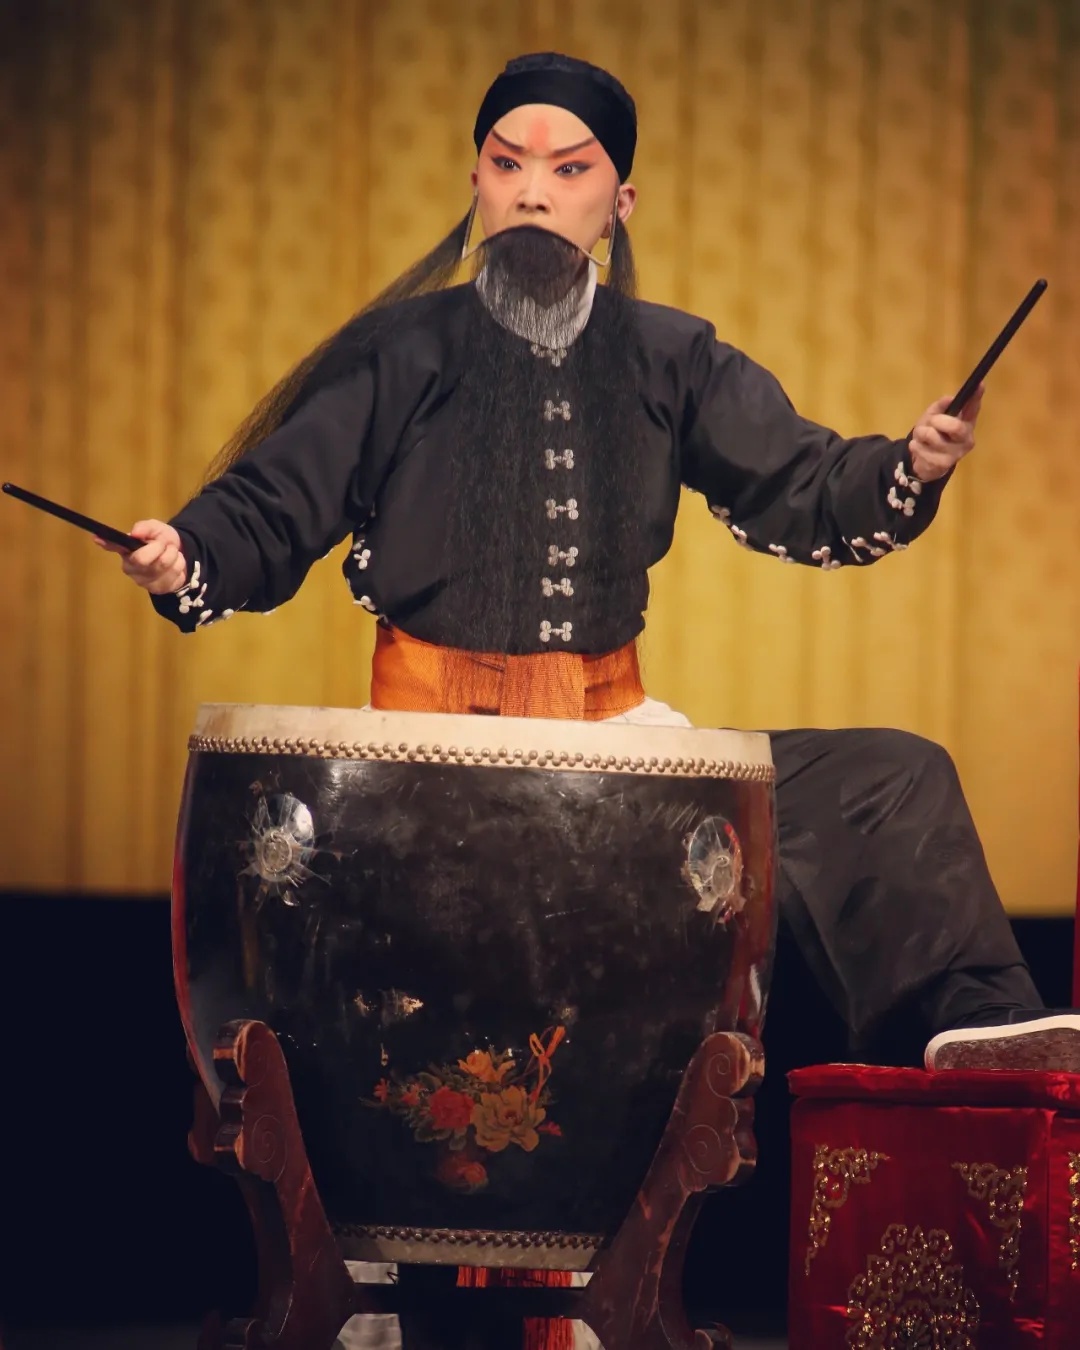 《击鼓骂曹》是一出京剧老生传统戏,取材于《三国演义》第23回弥正平